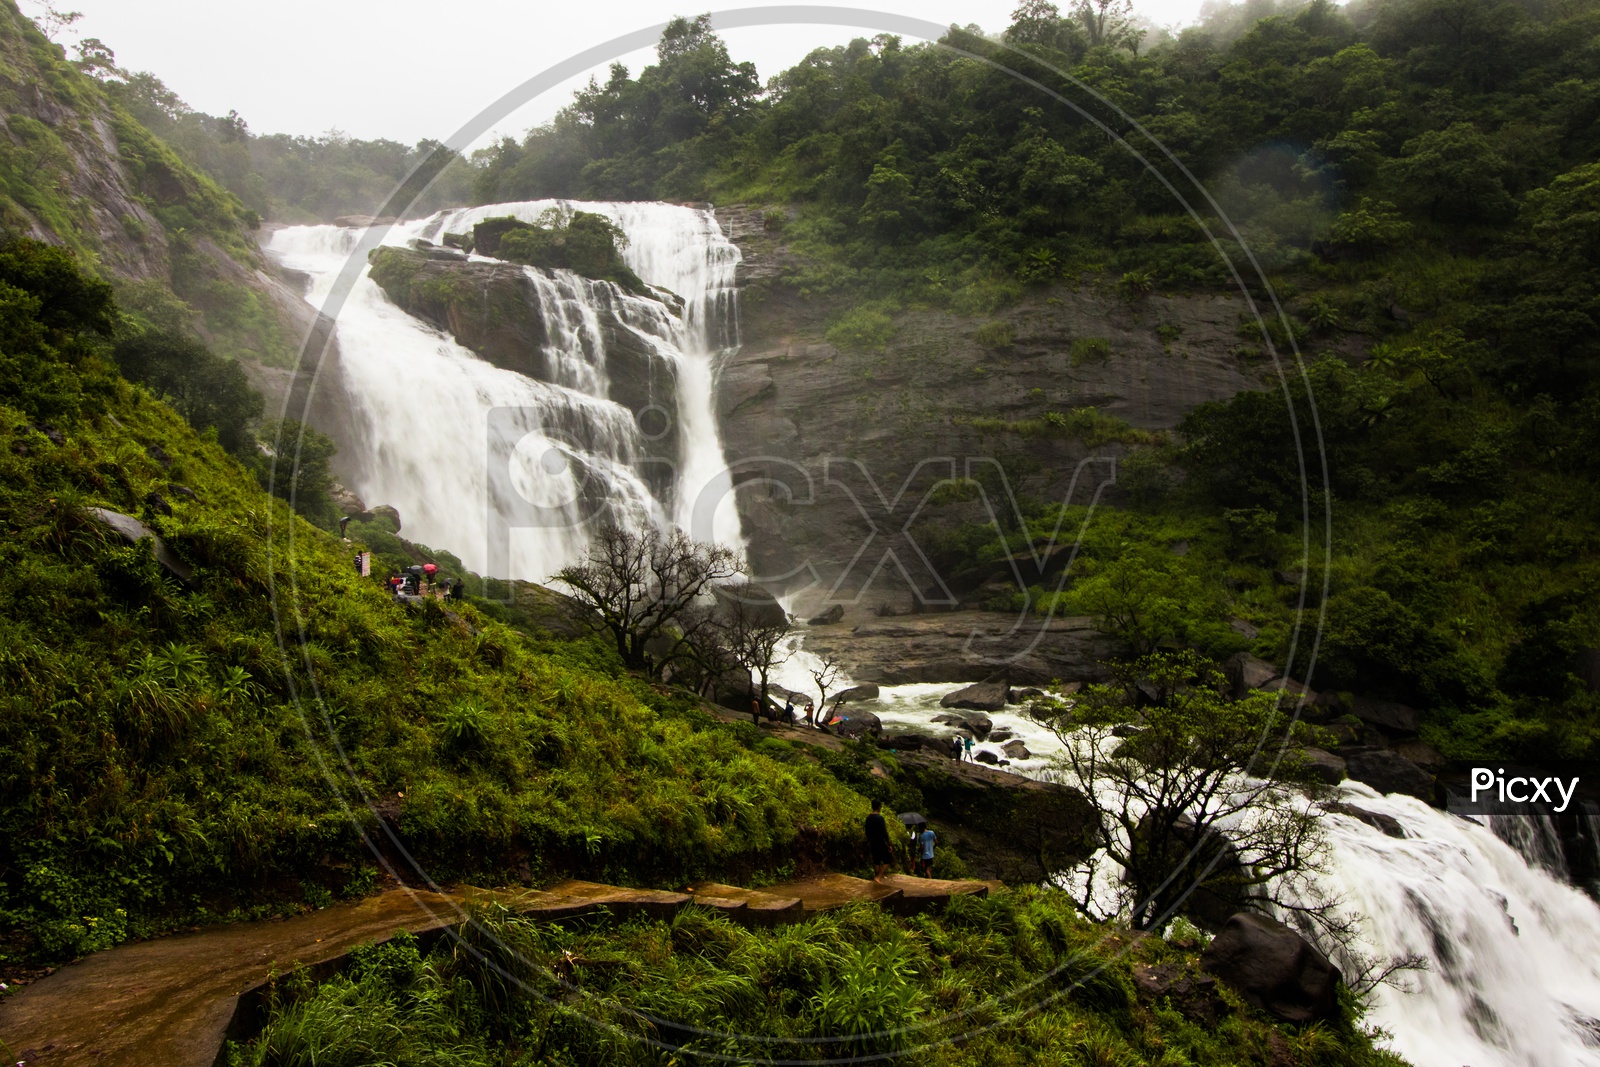 Mallalli Water Falls